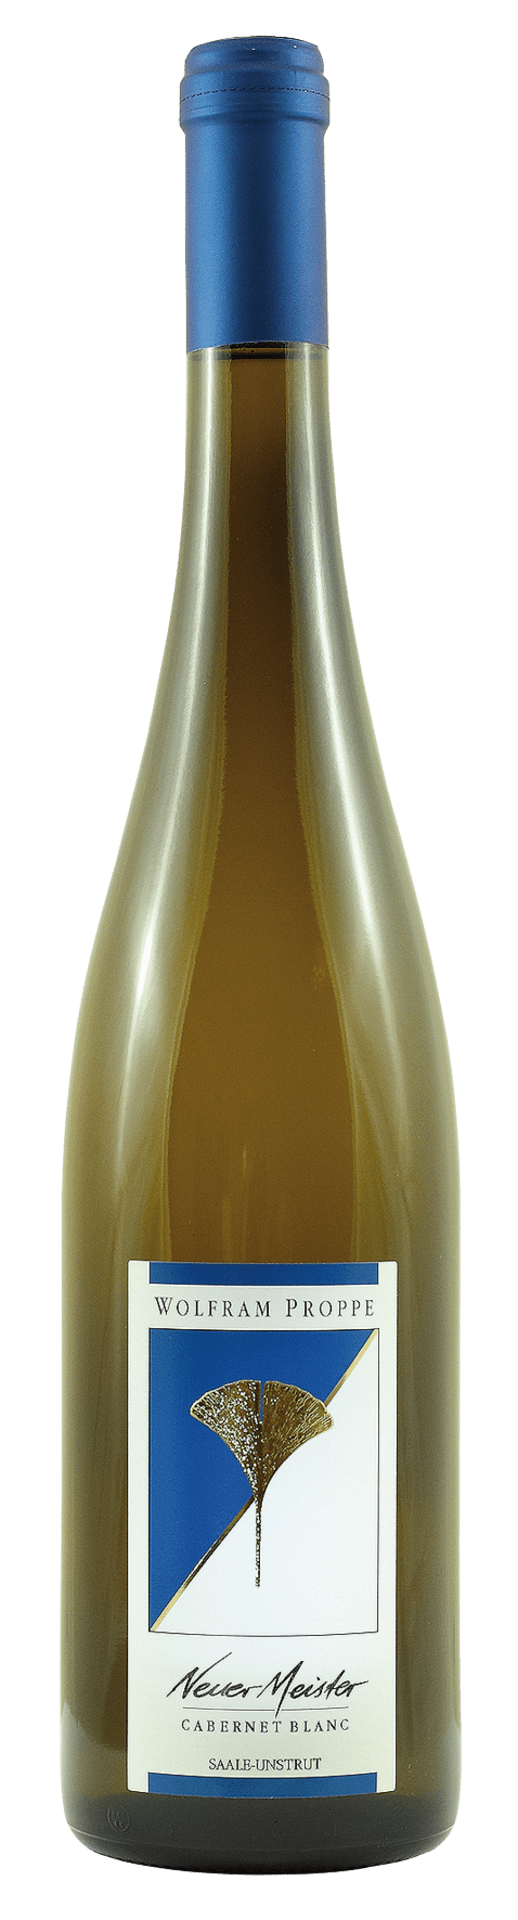 Cabernet Blanc Qualitätswein Neuer Meister